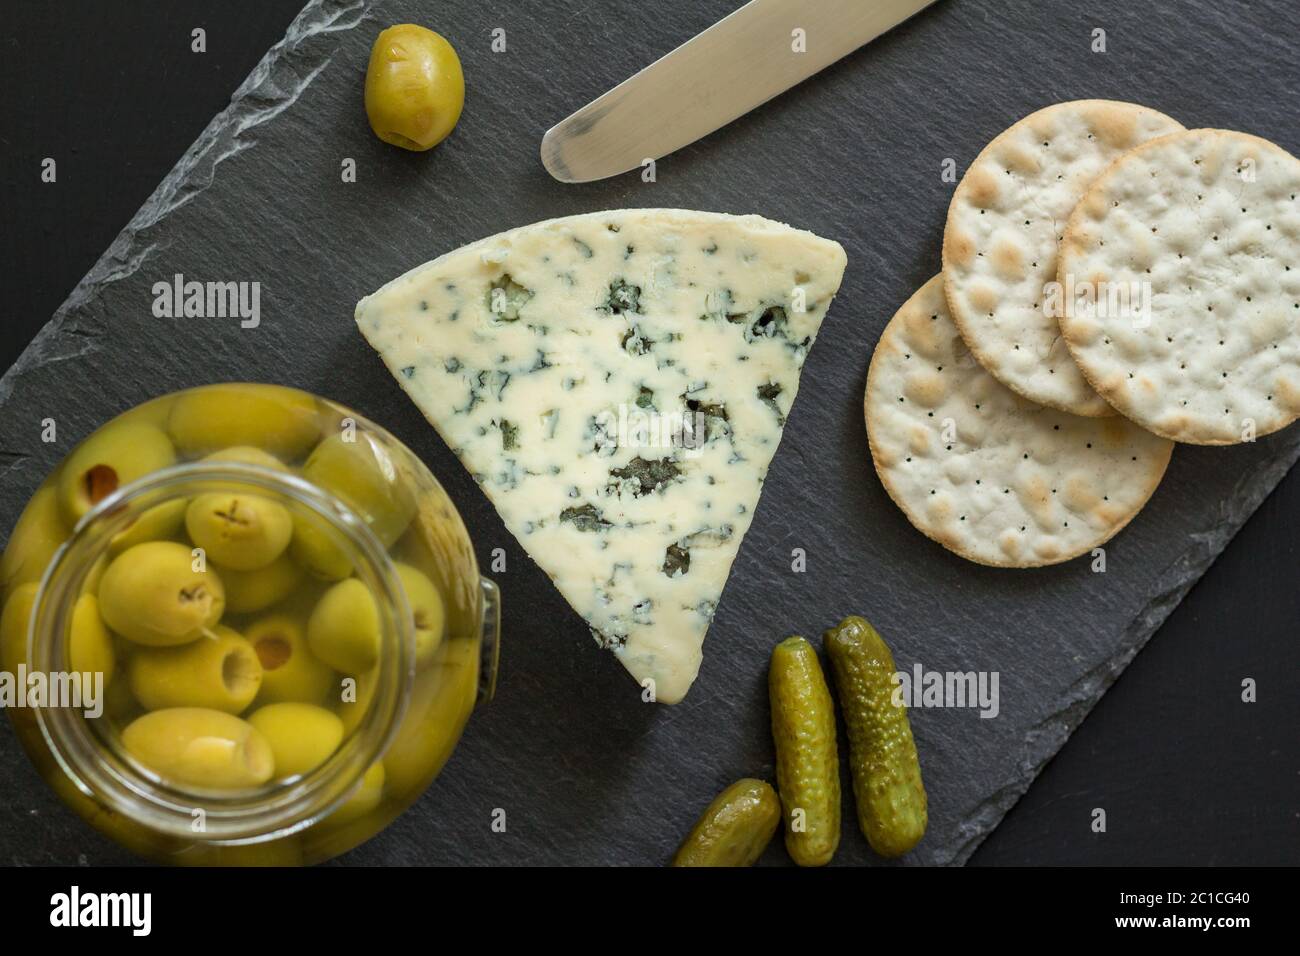 Plateau de fromages avec moule bleu, olives, cornichons et craquelins en ardoise noire - photo du dessus Banque D'Images